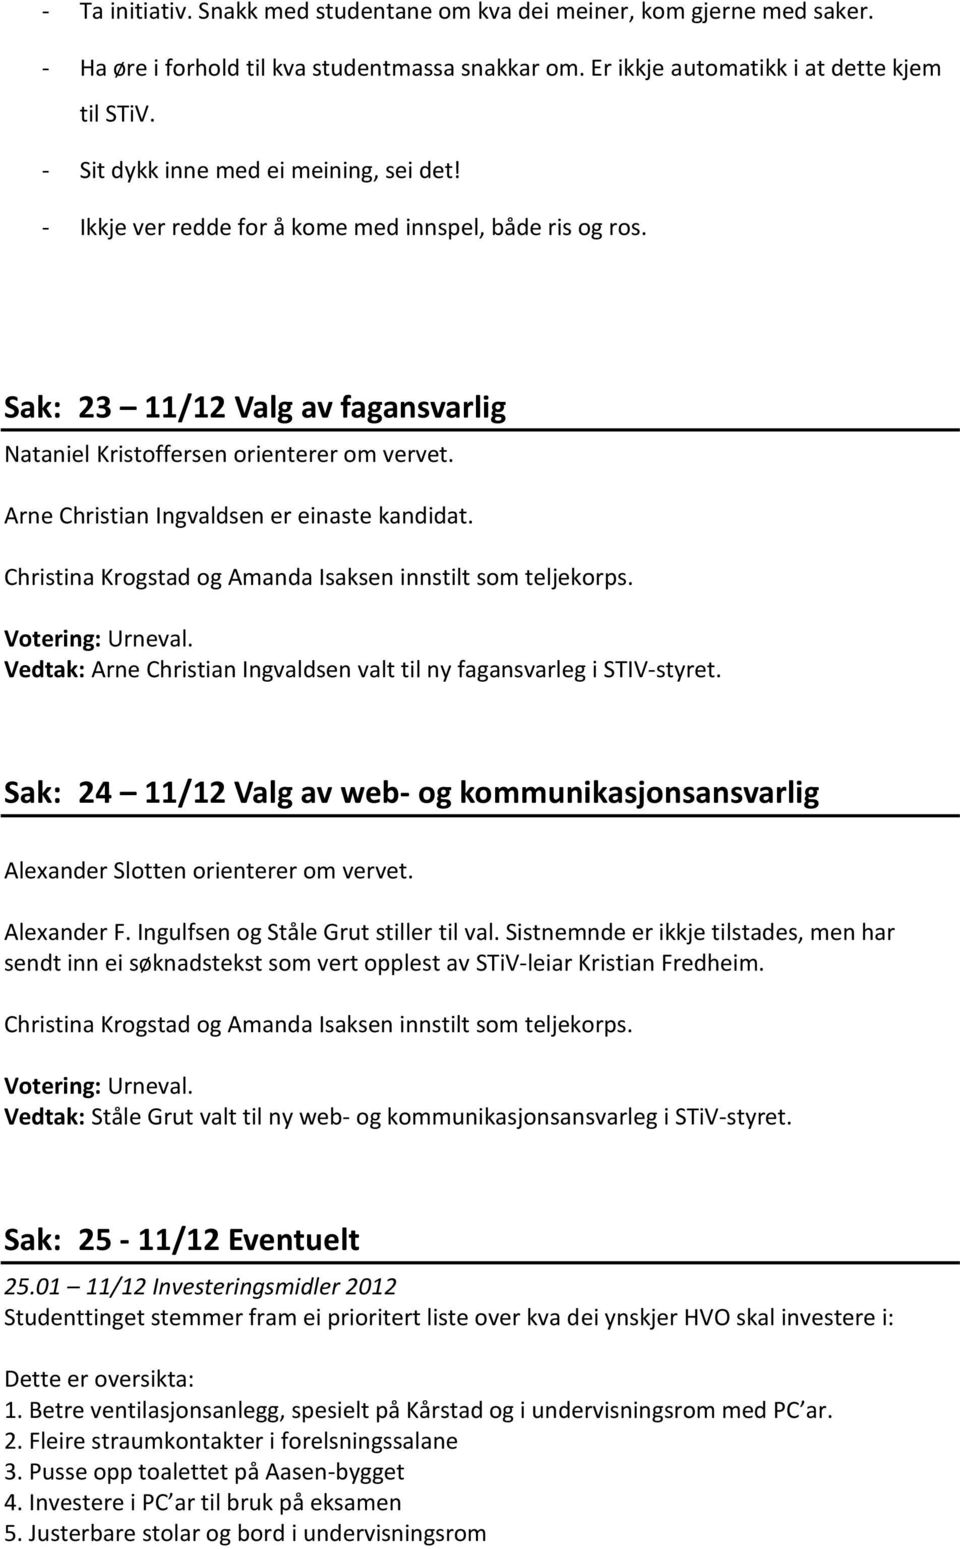 Arne Christian Ingvaldsen er einaste kandidat. Christina Krogstad og Amanda Isaksen innstilt som teljekorps. Votering: Urneval.